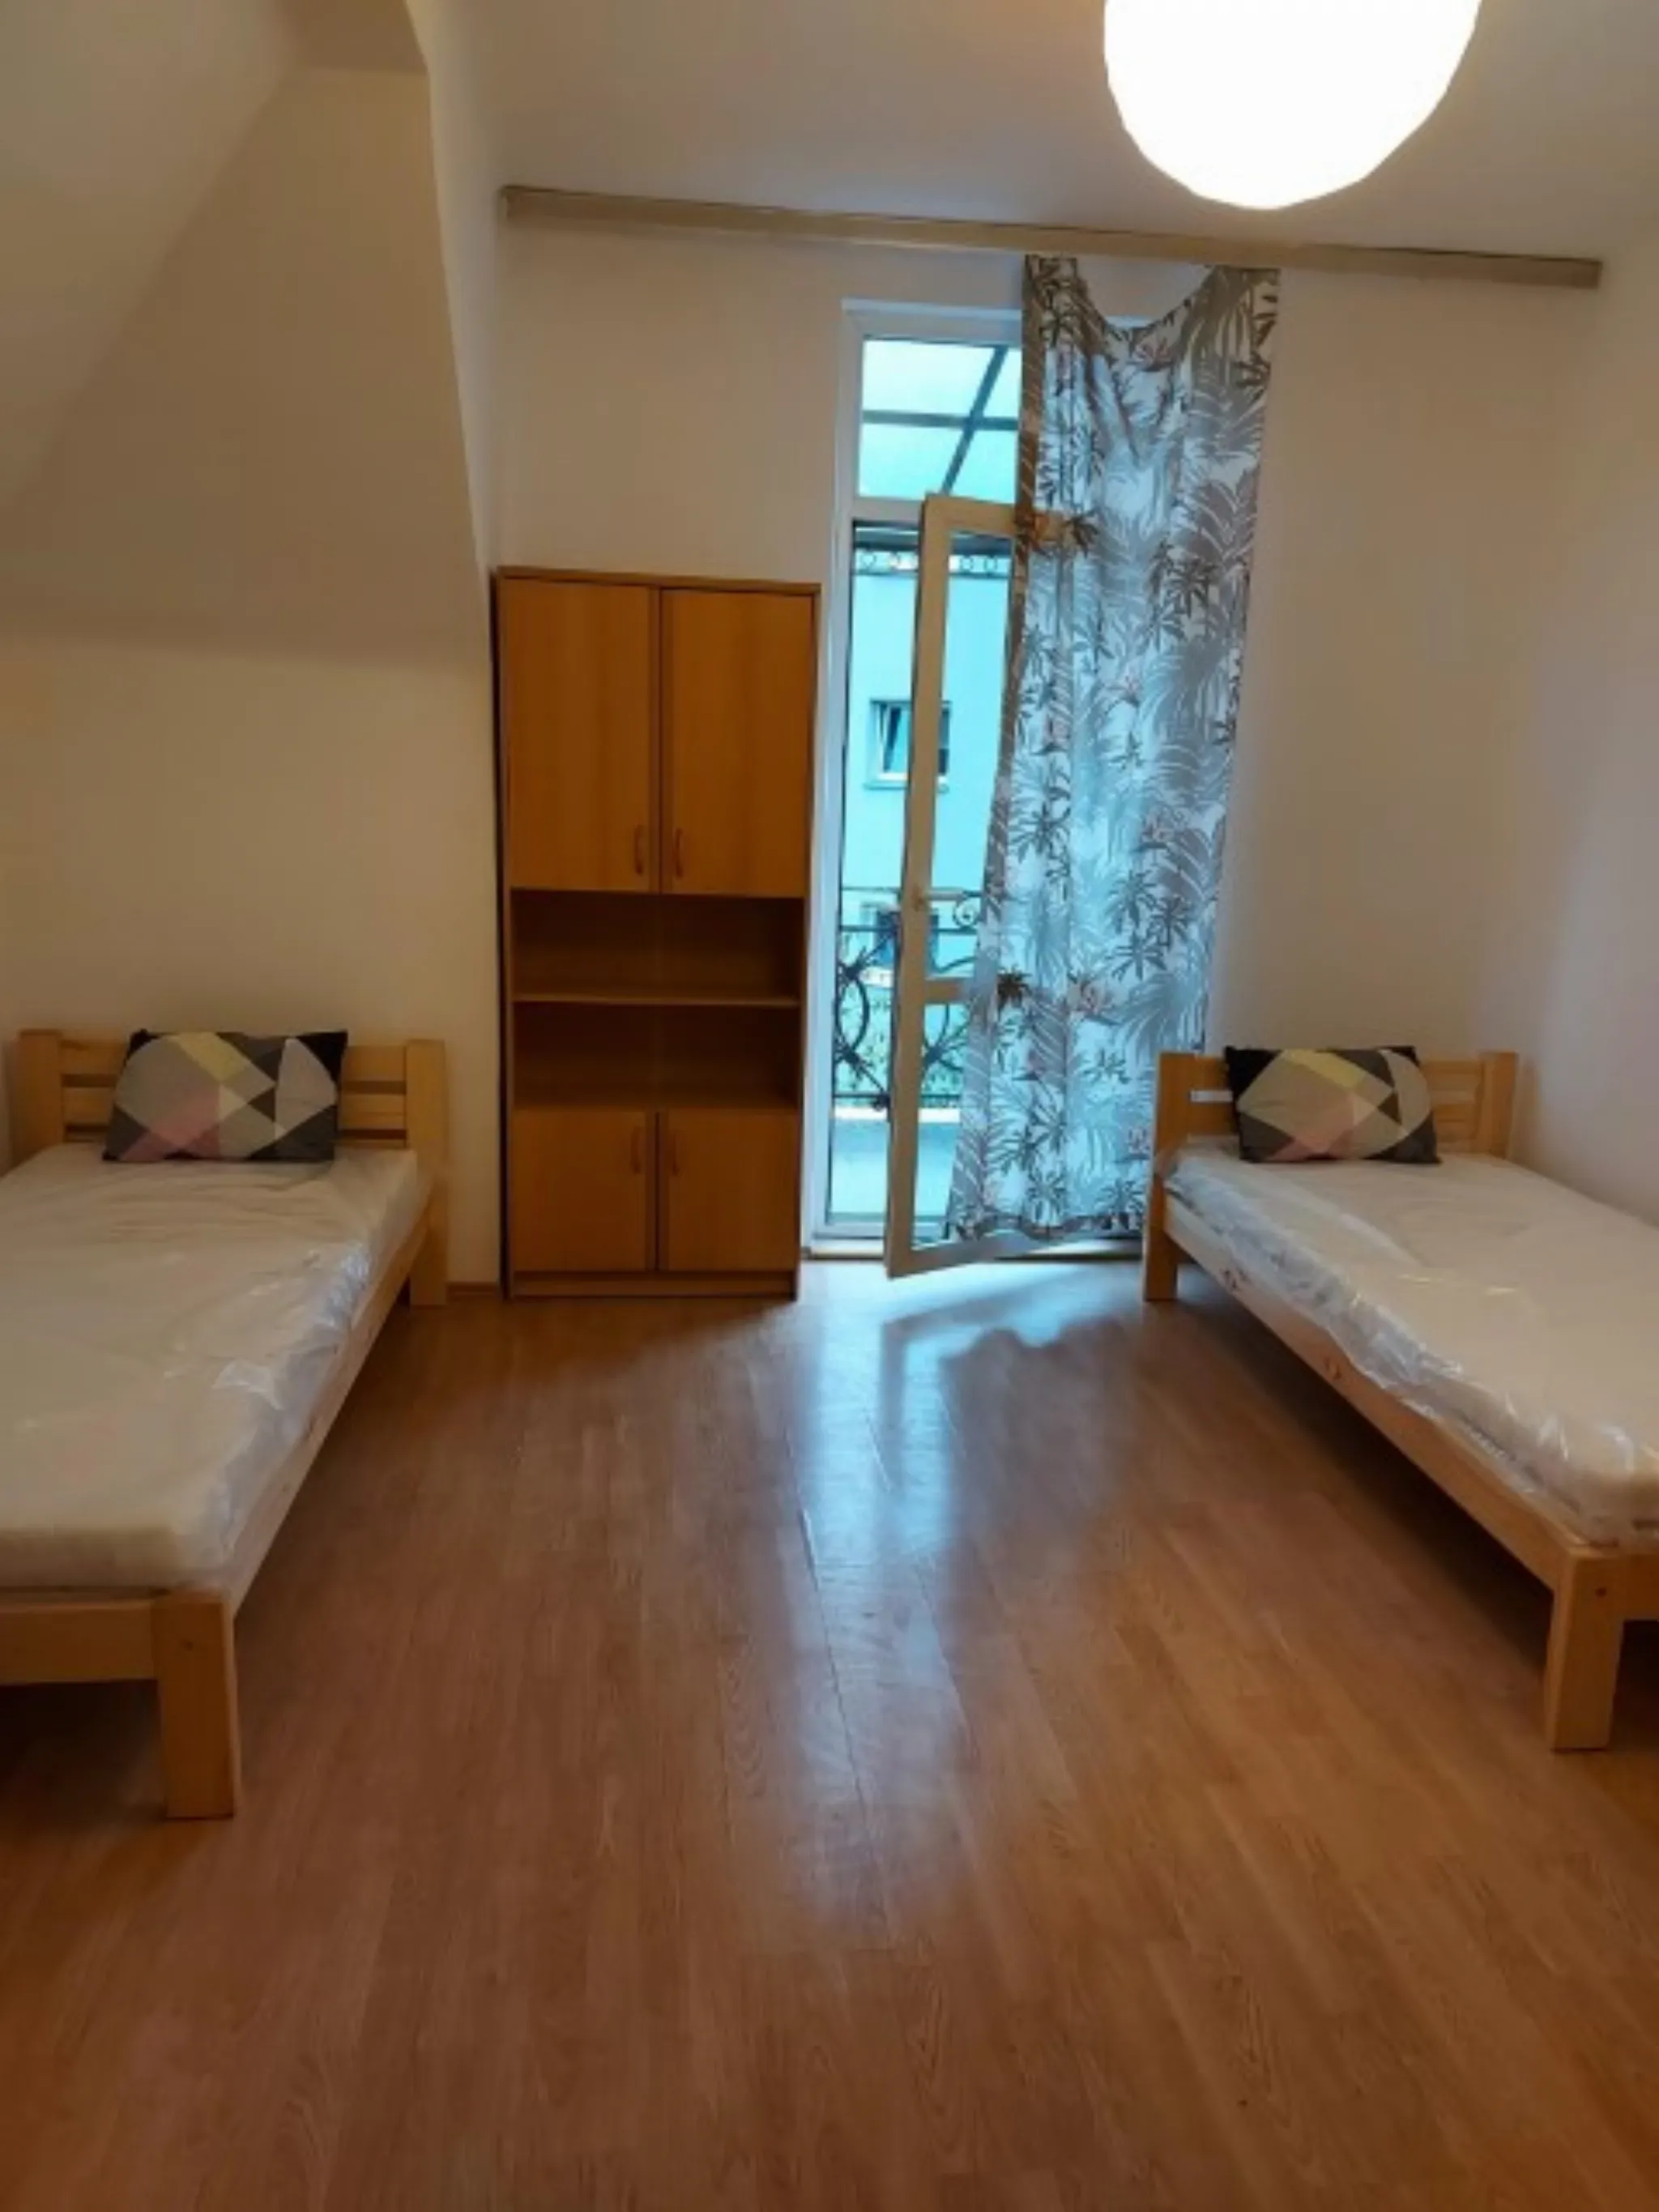 Krowodrza mieszkanie sprzedam - Mieszkanie na sprzedaż Kraków